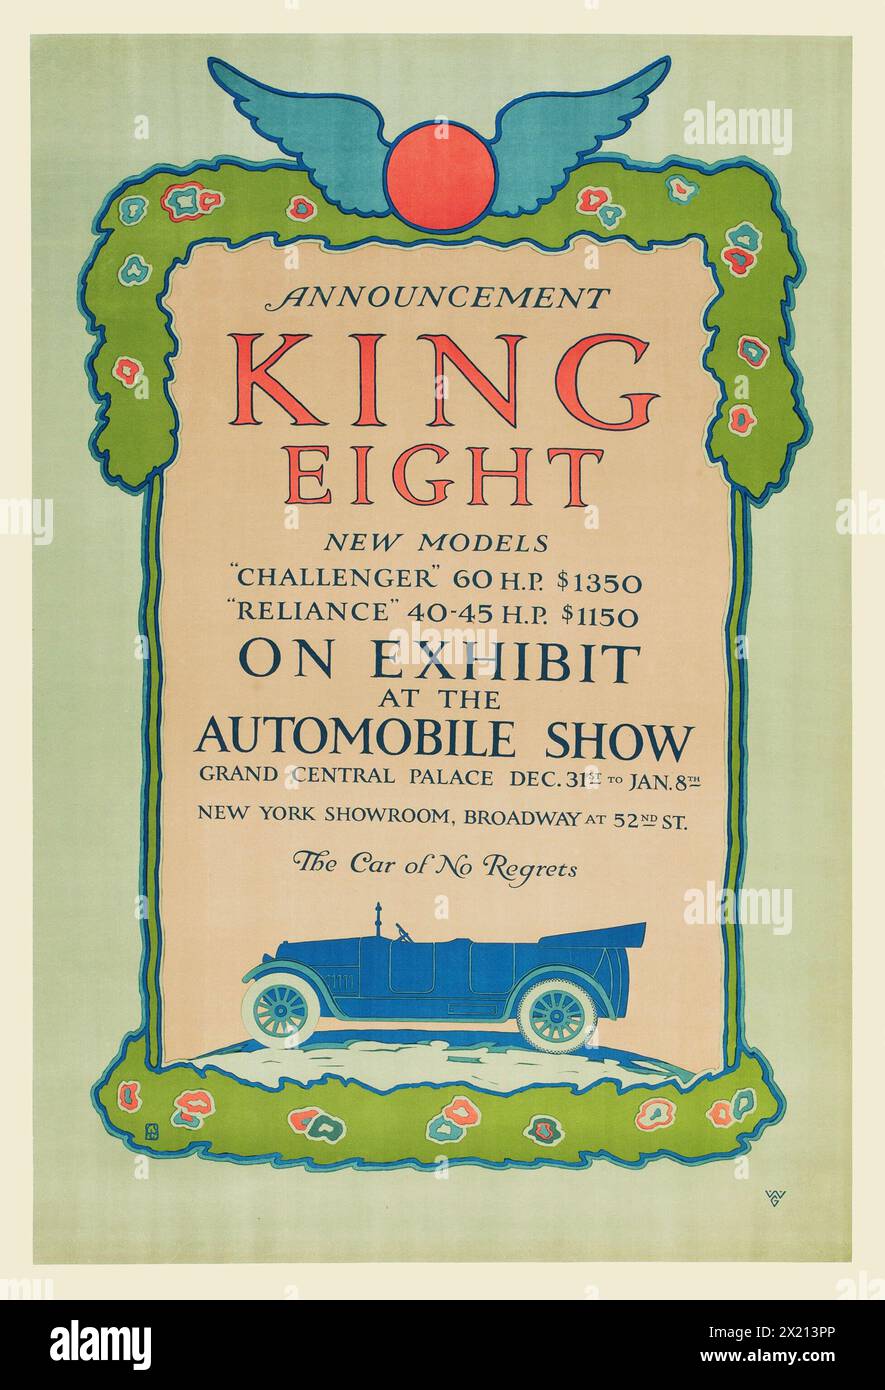 Publicité pour voitures anciennes - salon de l'automobile - King Eight 1915 à l'exposition - nouveaux modèles, « Challenger » et « Reliance » - salle d'exposition de New York, Grand Central Palace - affiche publicitaire Banque D'Images